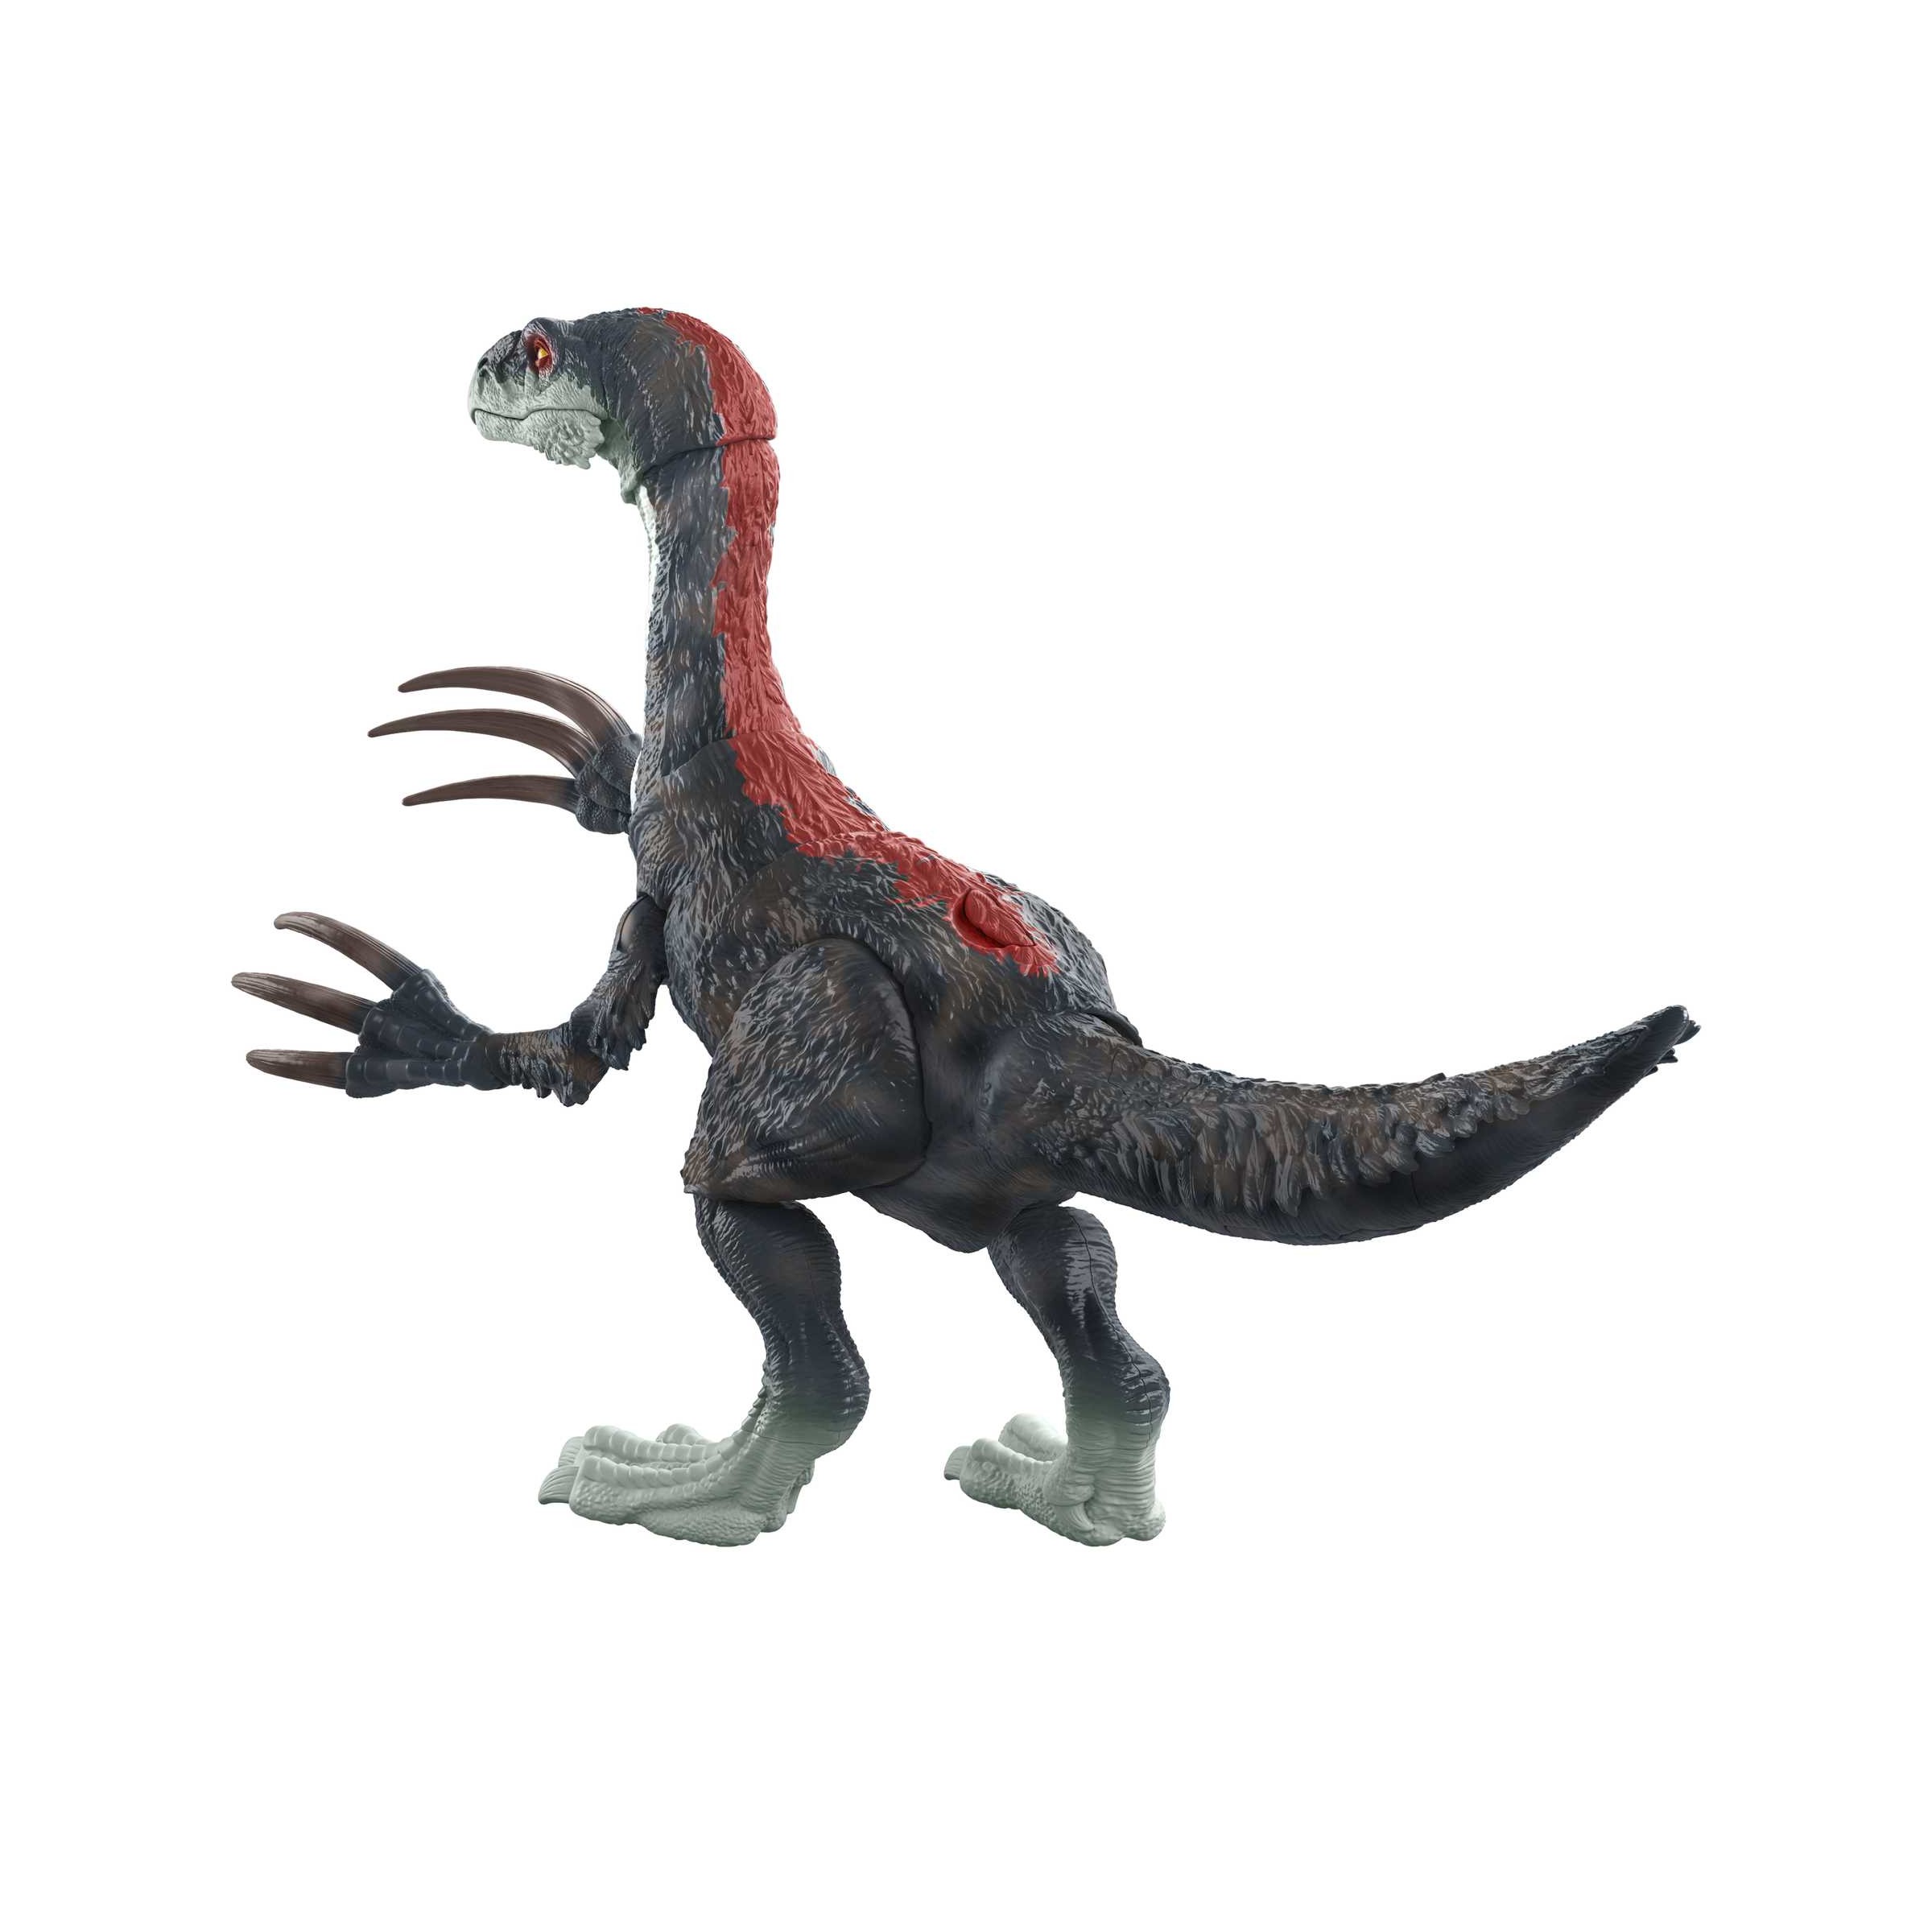 Jurassic world, dinosauro slasher con suoni snodato, giocattolo per bambini 4+ anni, gwd65 - Jurassic World